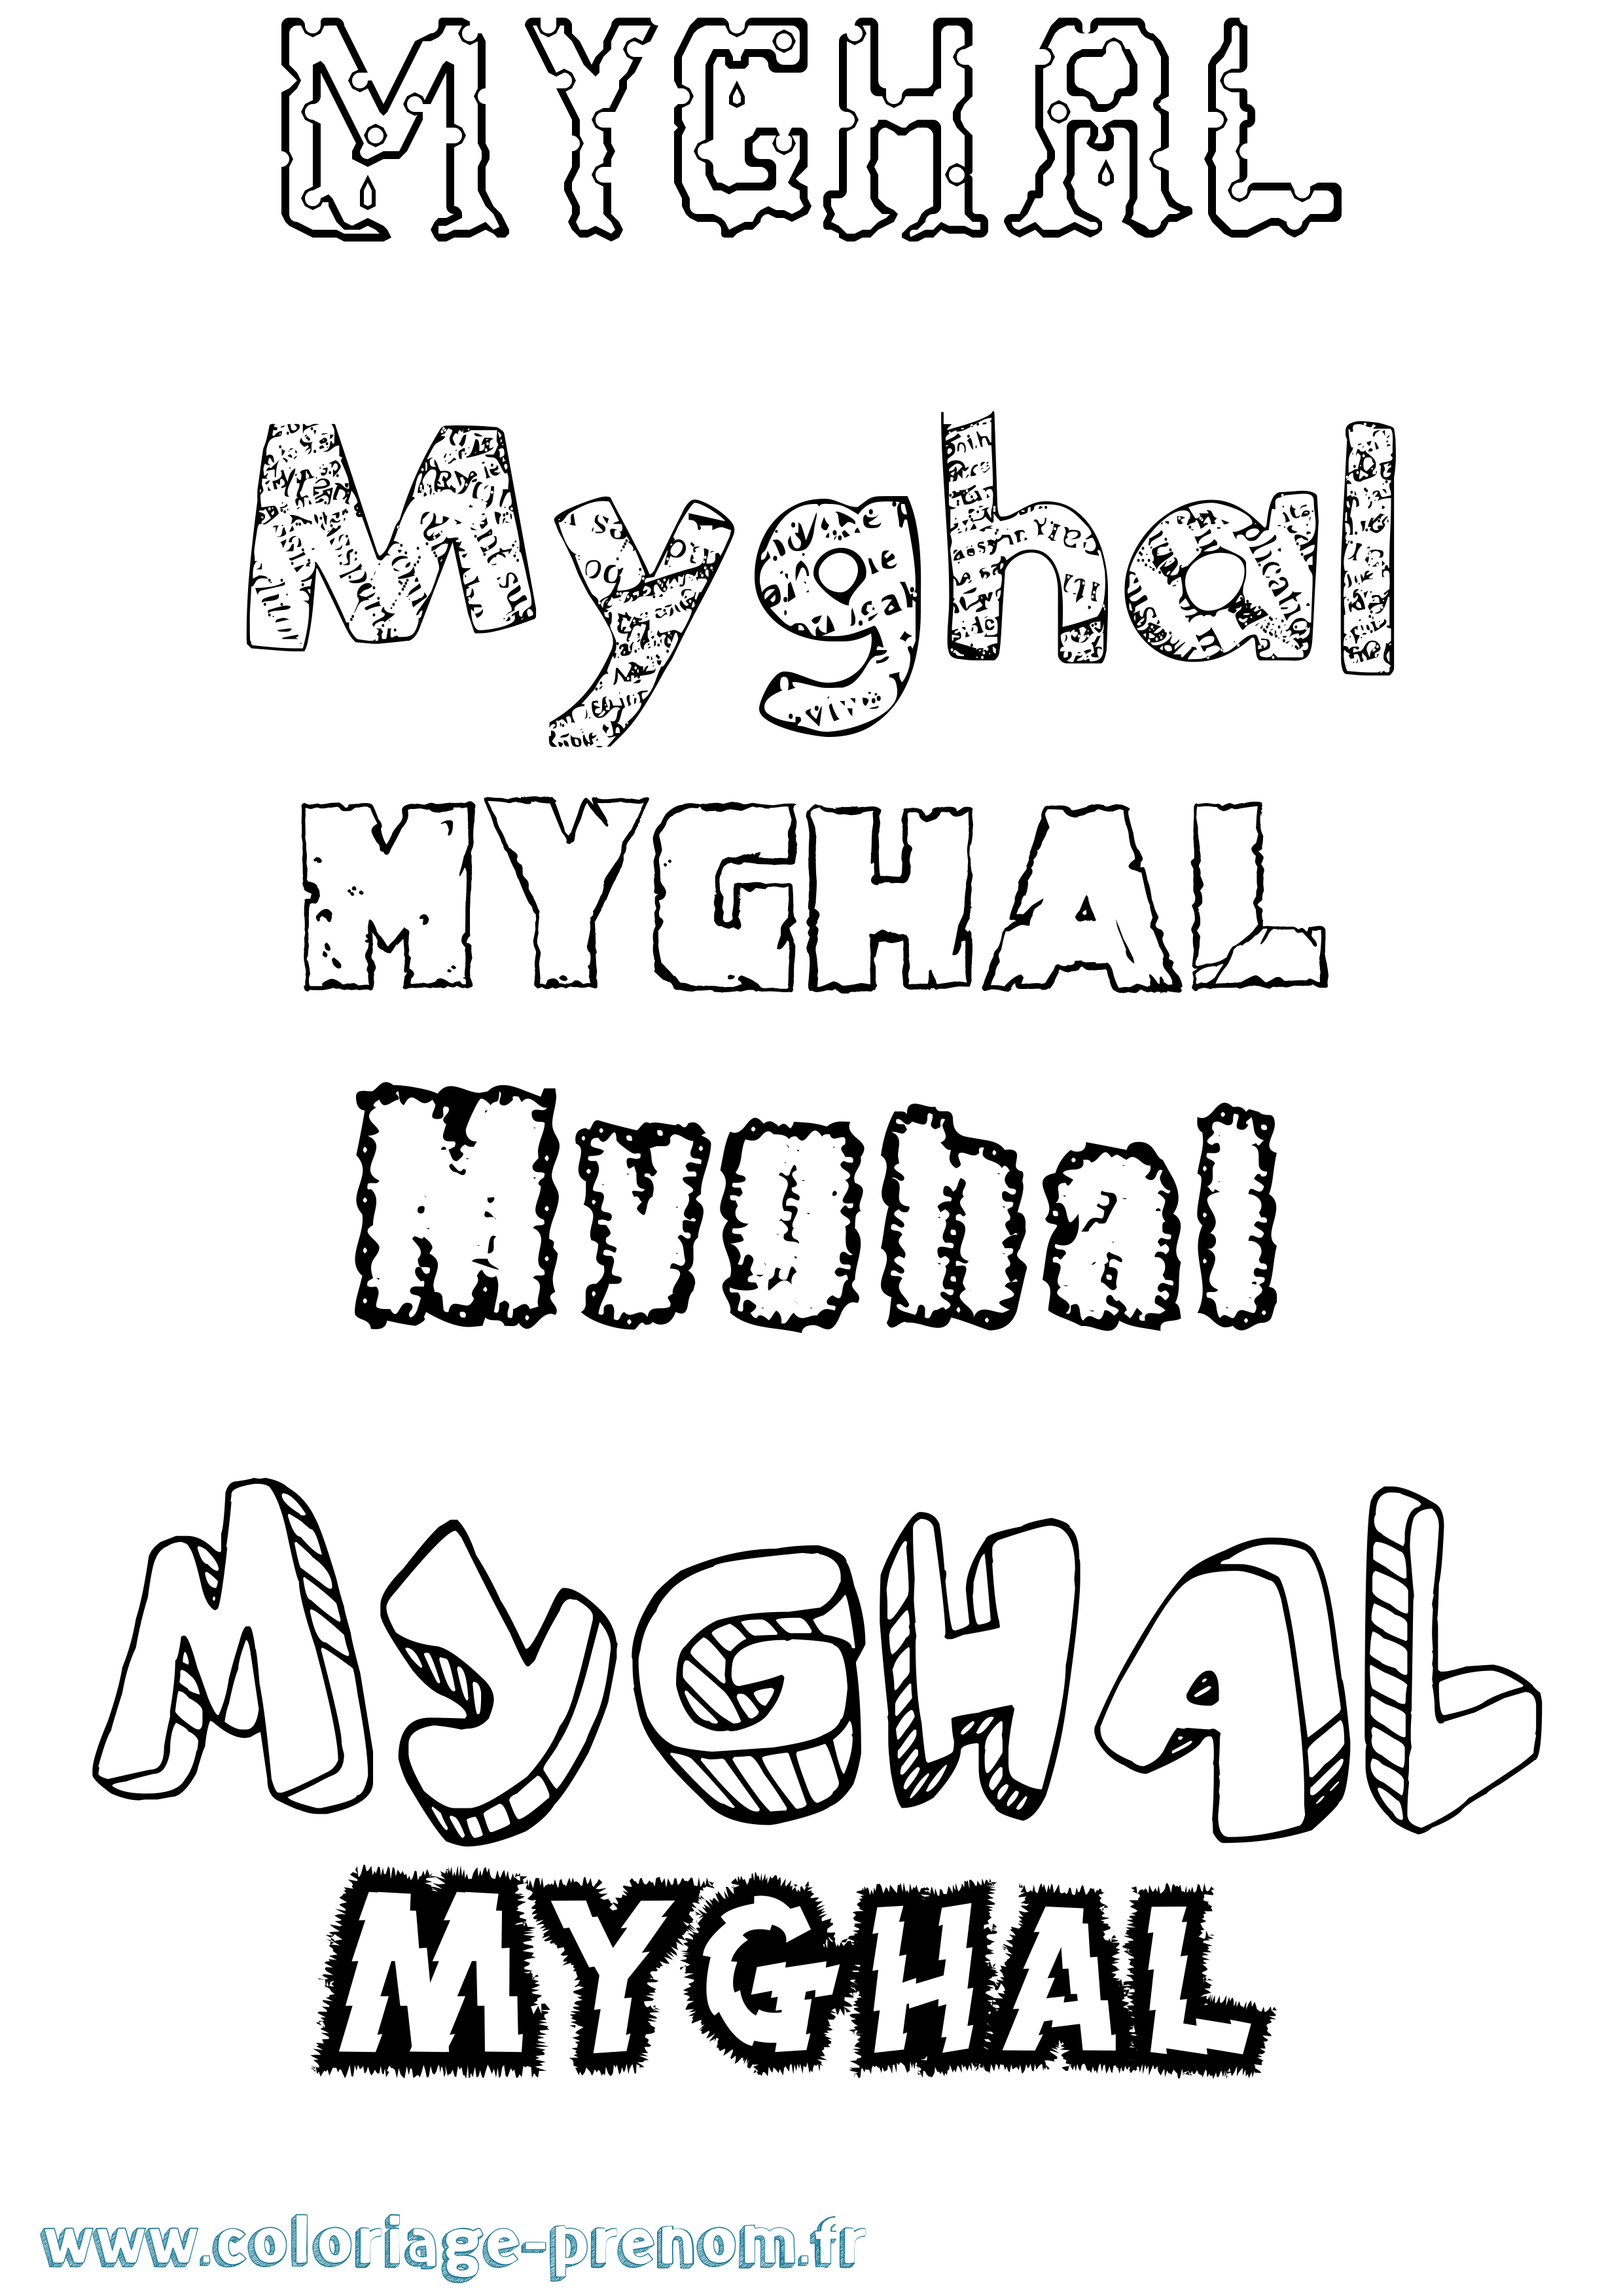 Coloriage prénom Myghal Destructuré